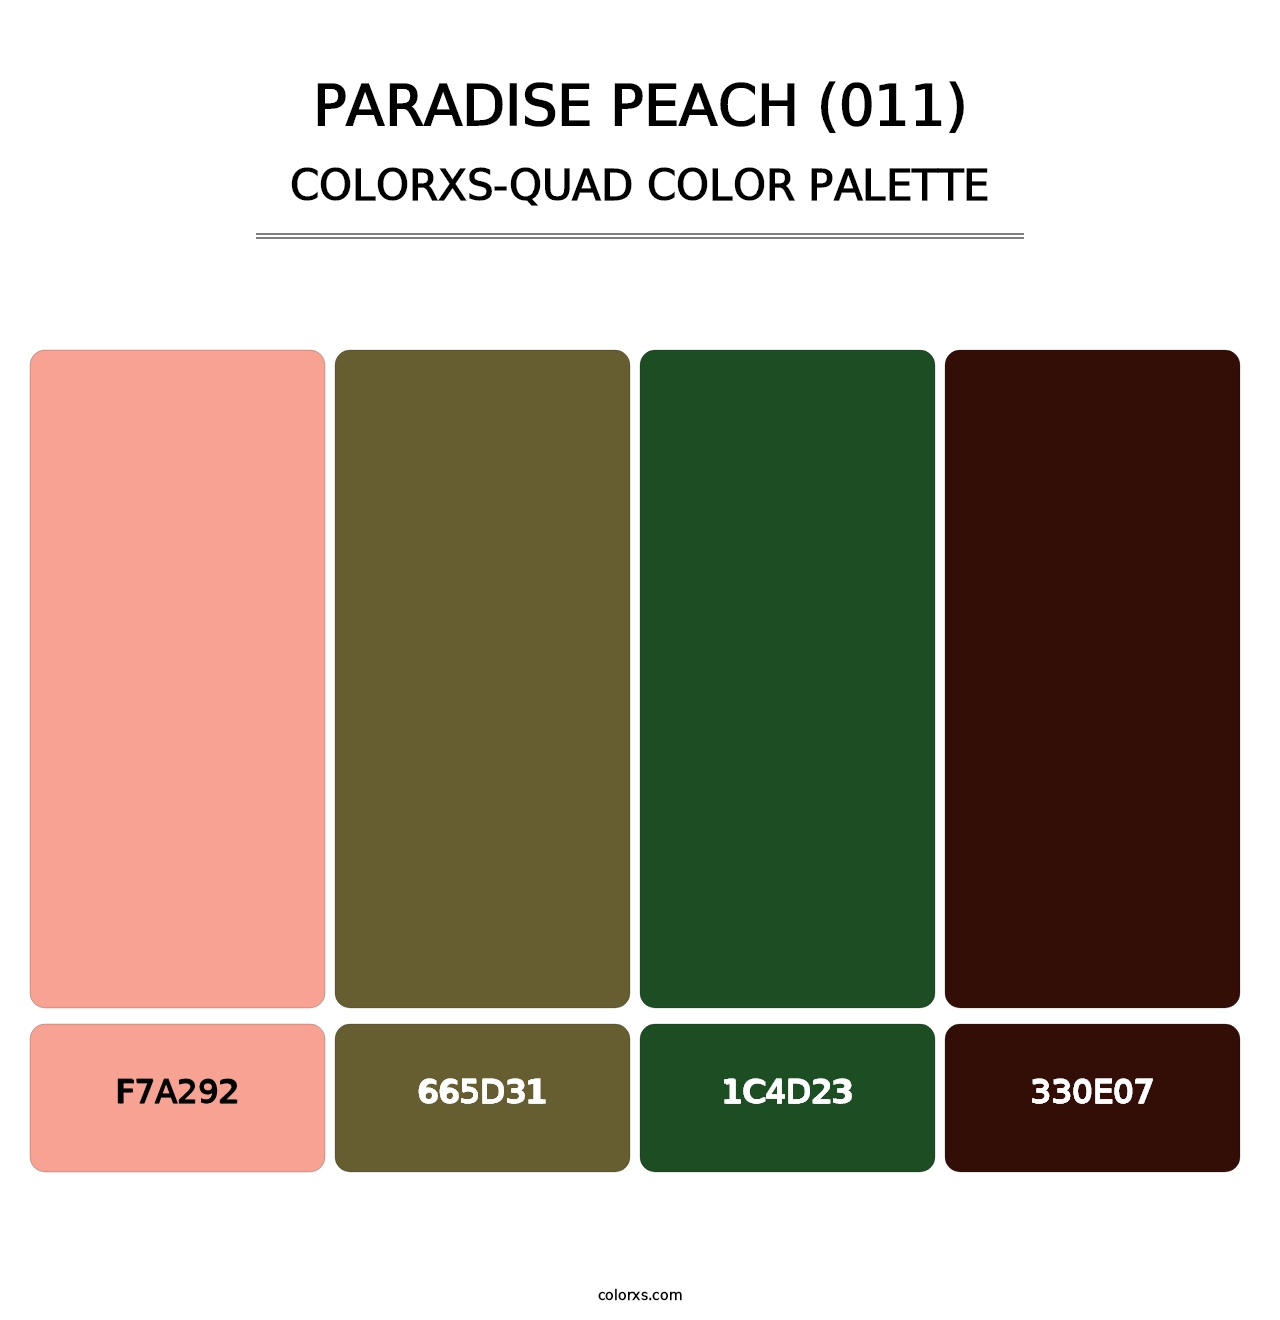 Paradise Peach (011) - Colorxs Quad Palette